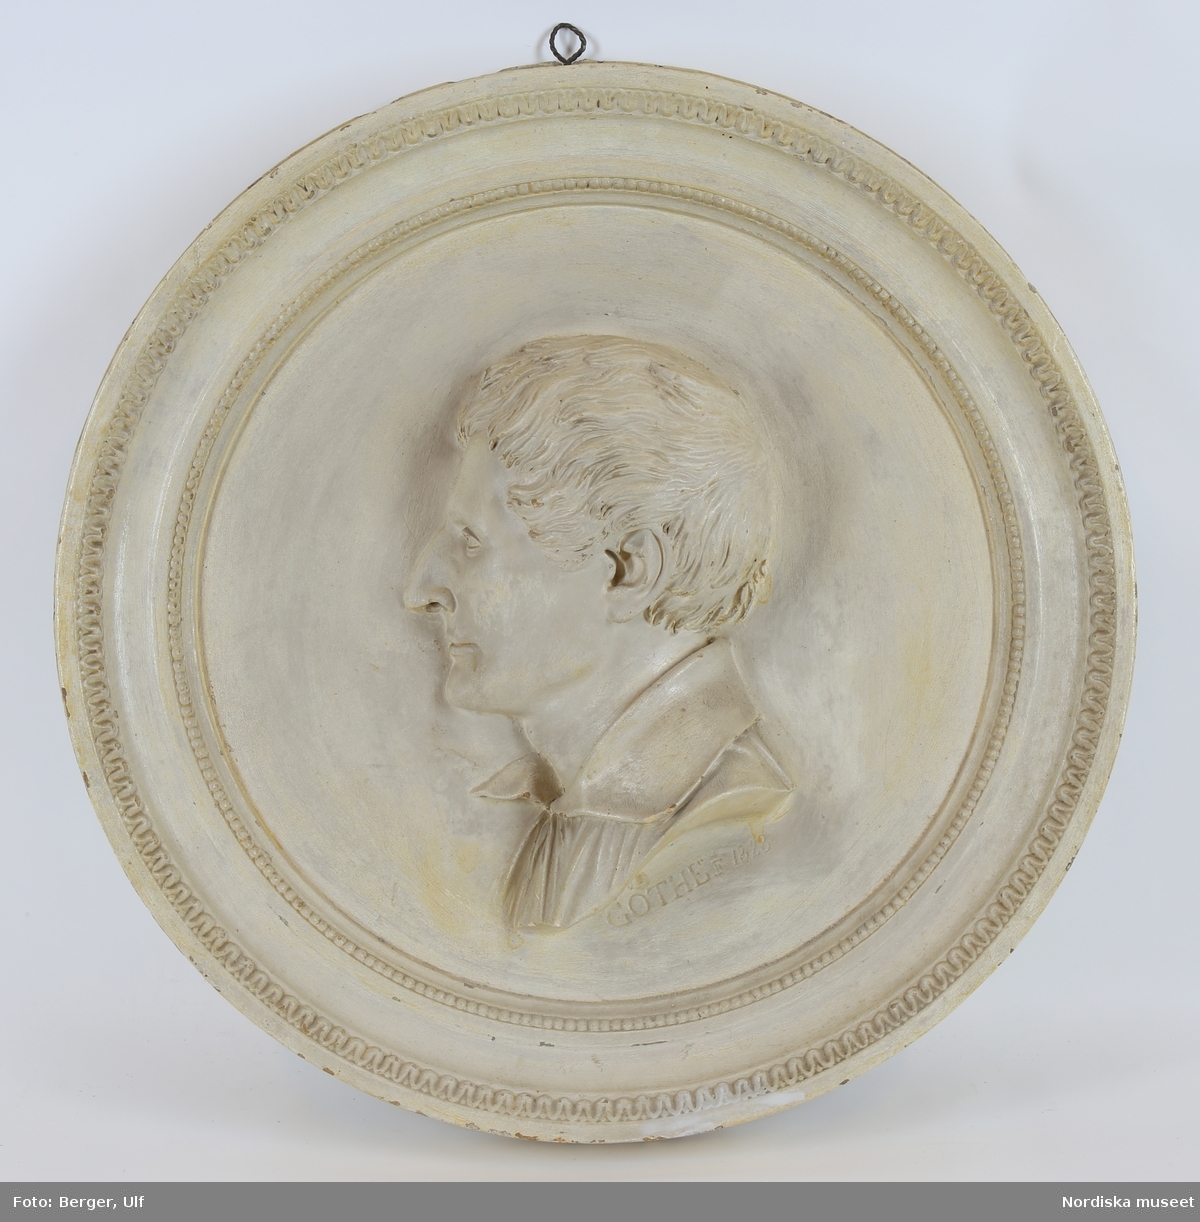 Porträtt föreställande Johan Hazelius (1758-1828), lärfkramhandlare i Stockholm. Johan Hazelius var farfar till Artur Hazelius, Nordiska museets och Skansens grundare.